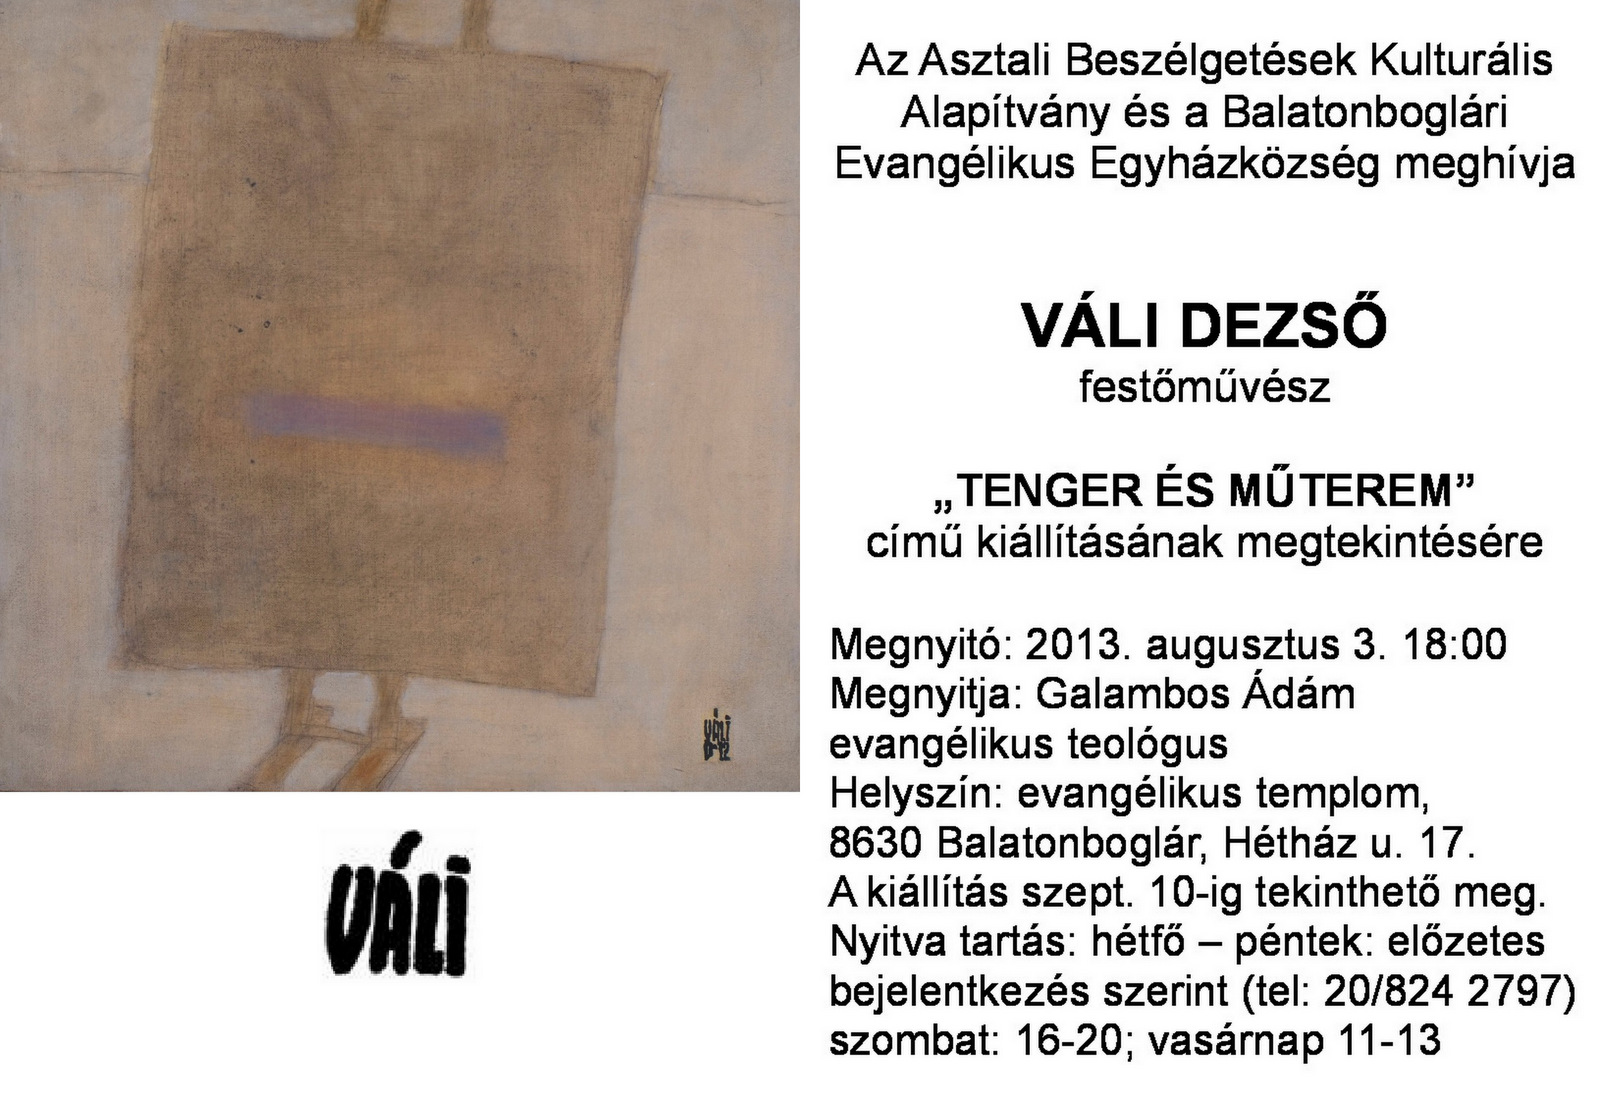 VÁLI DEZSŐ - "Tenger és műterem" című kiállítása